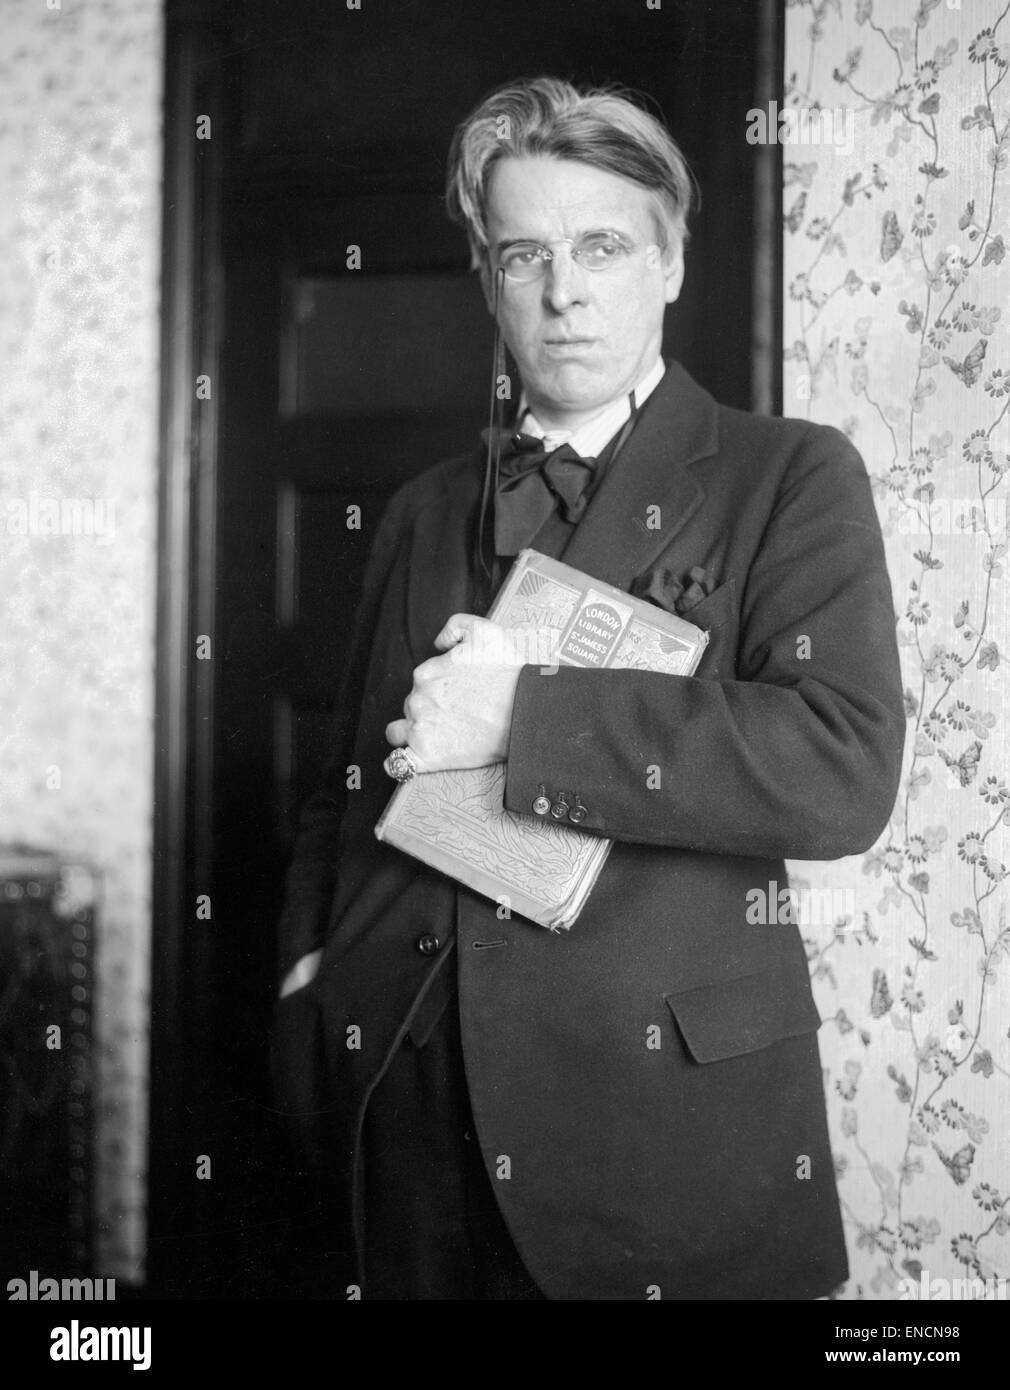 William Butler Yeats, irischer Dichter und einer der bedeutendsten Persönlichkeiten des 20. Jahrhunderts Literatur. W.B. Yeats, WB Yeats Stockfoto